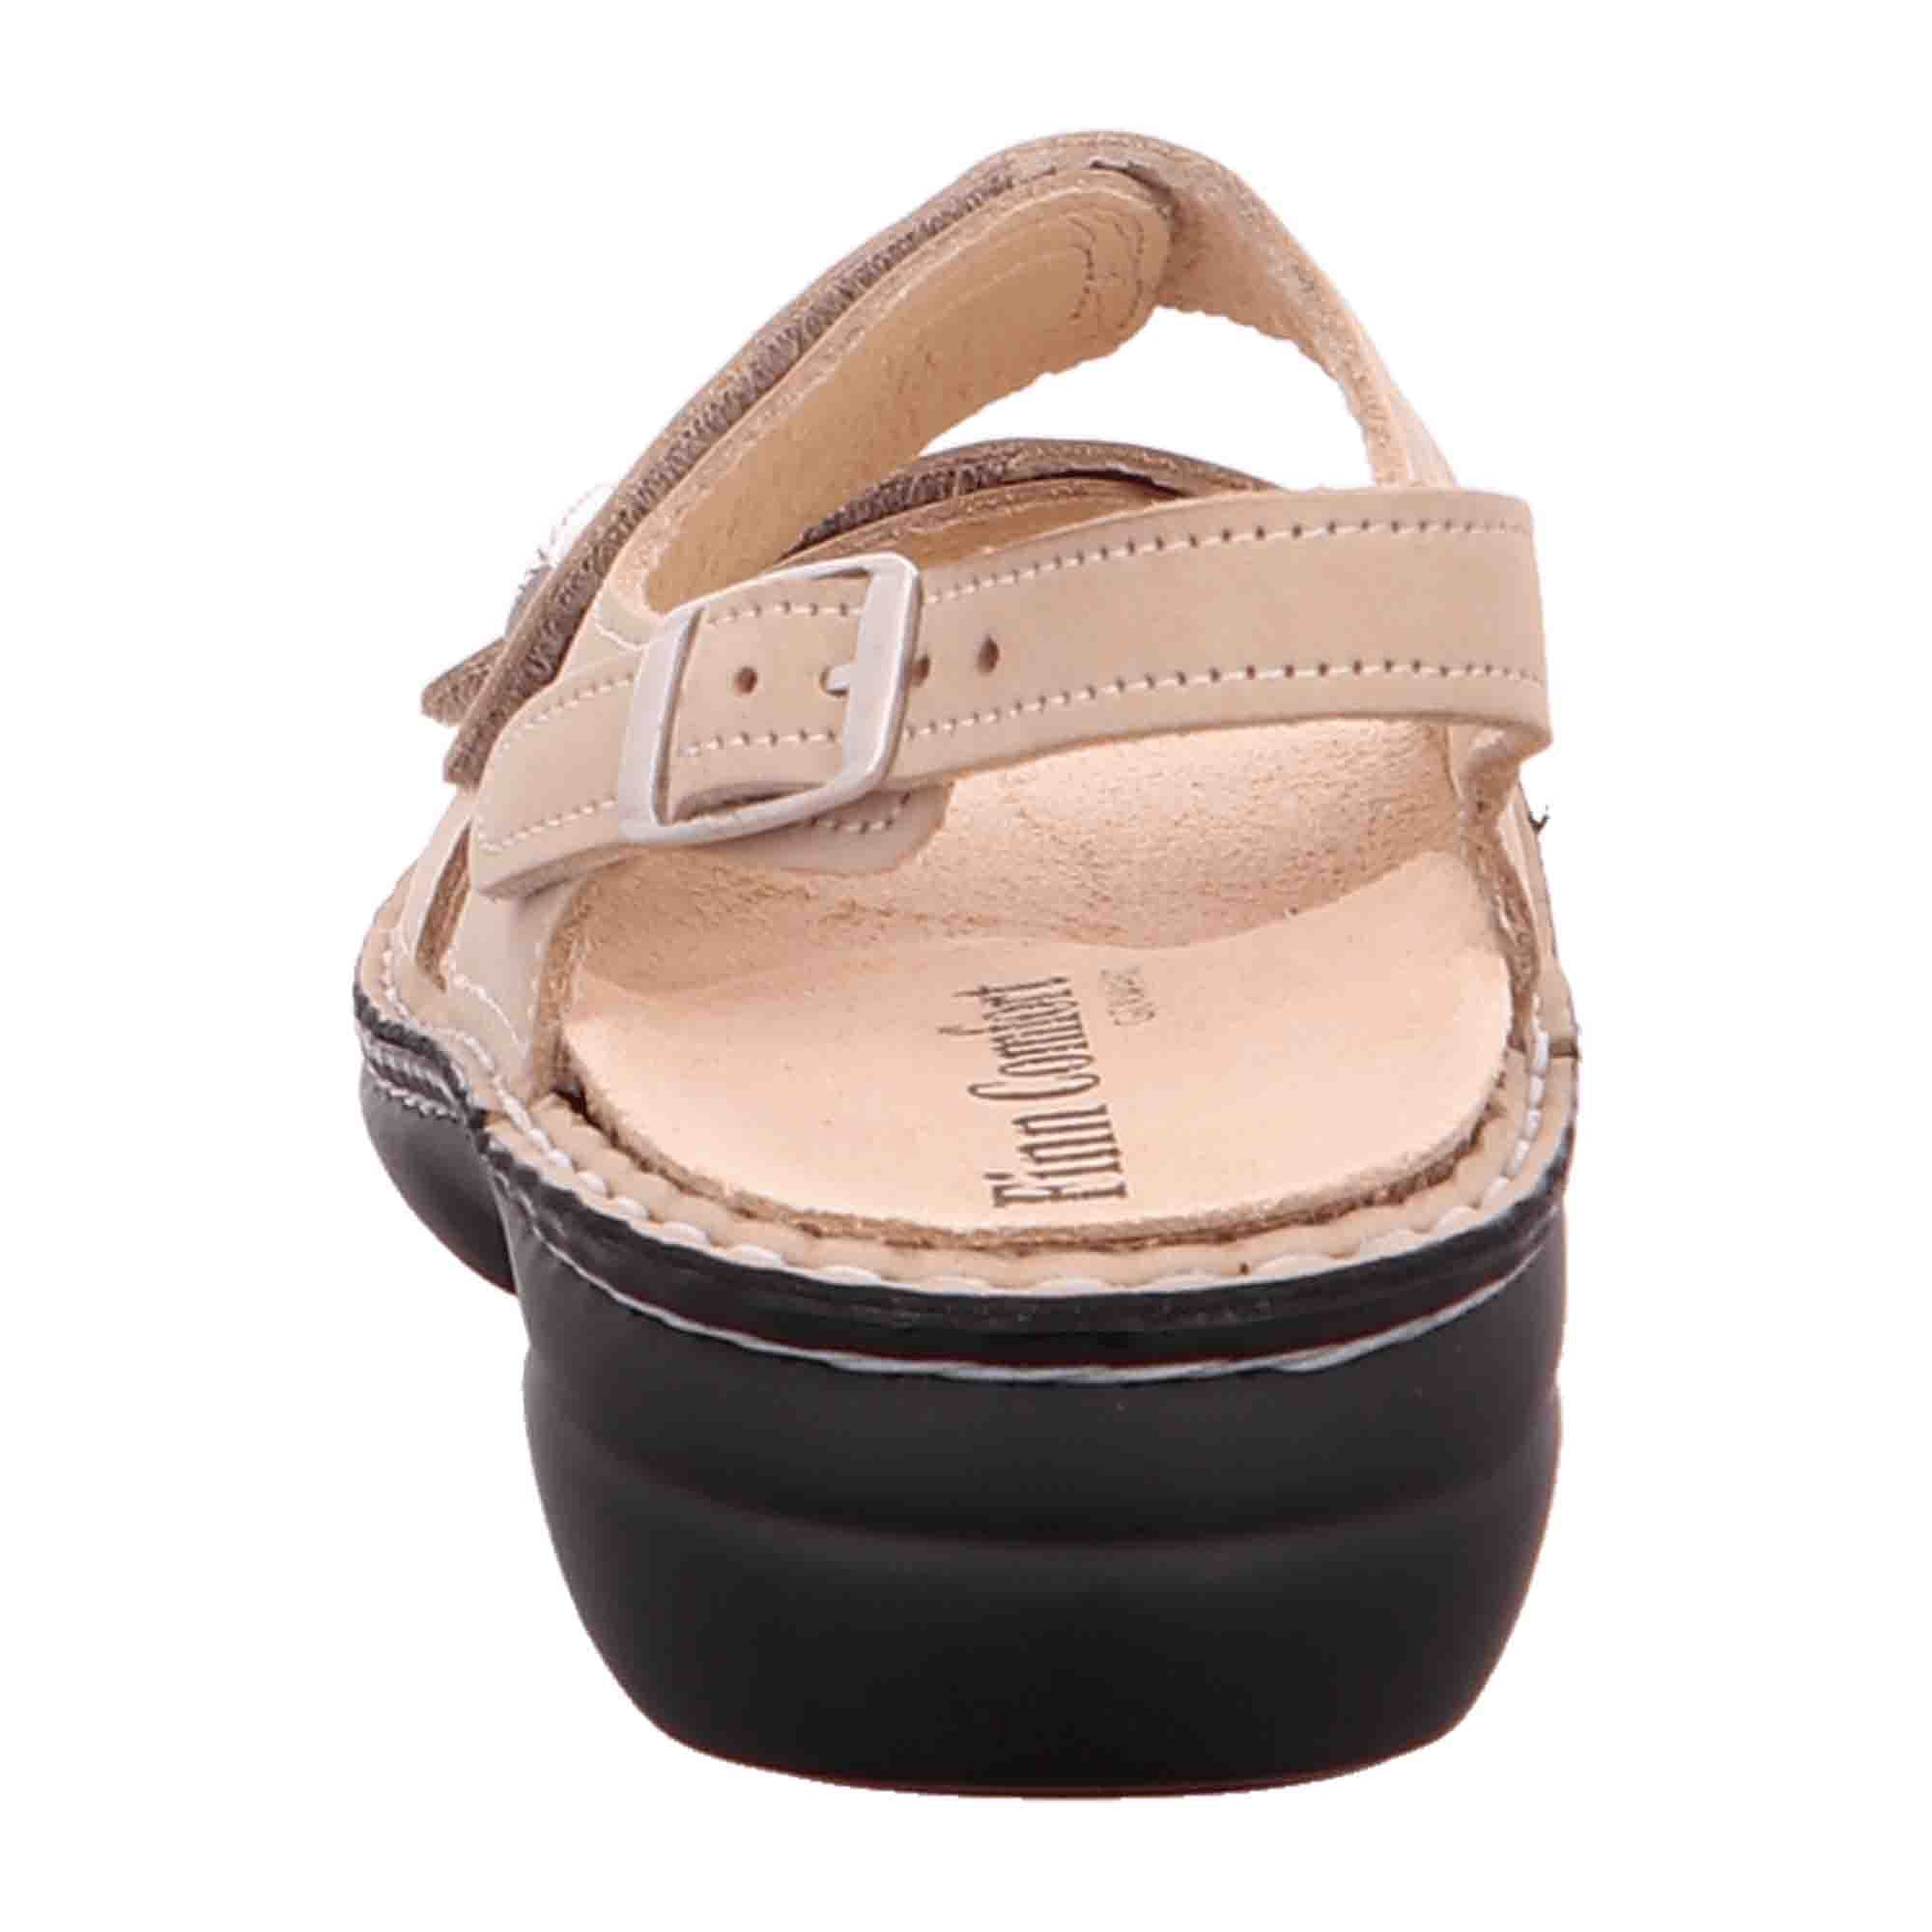 Finn Comfort Milos Women's Comfort Sandals - Beige